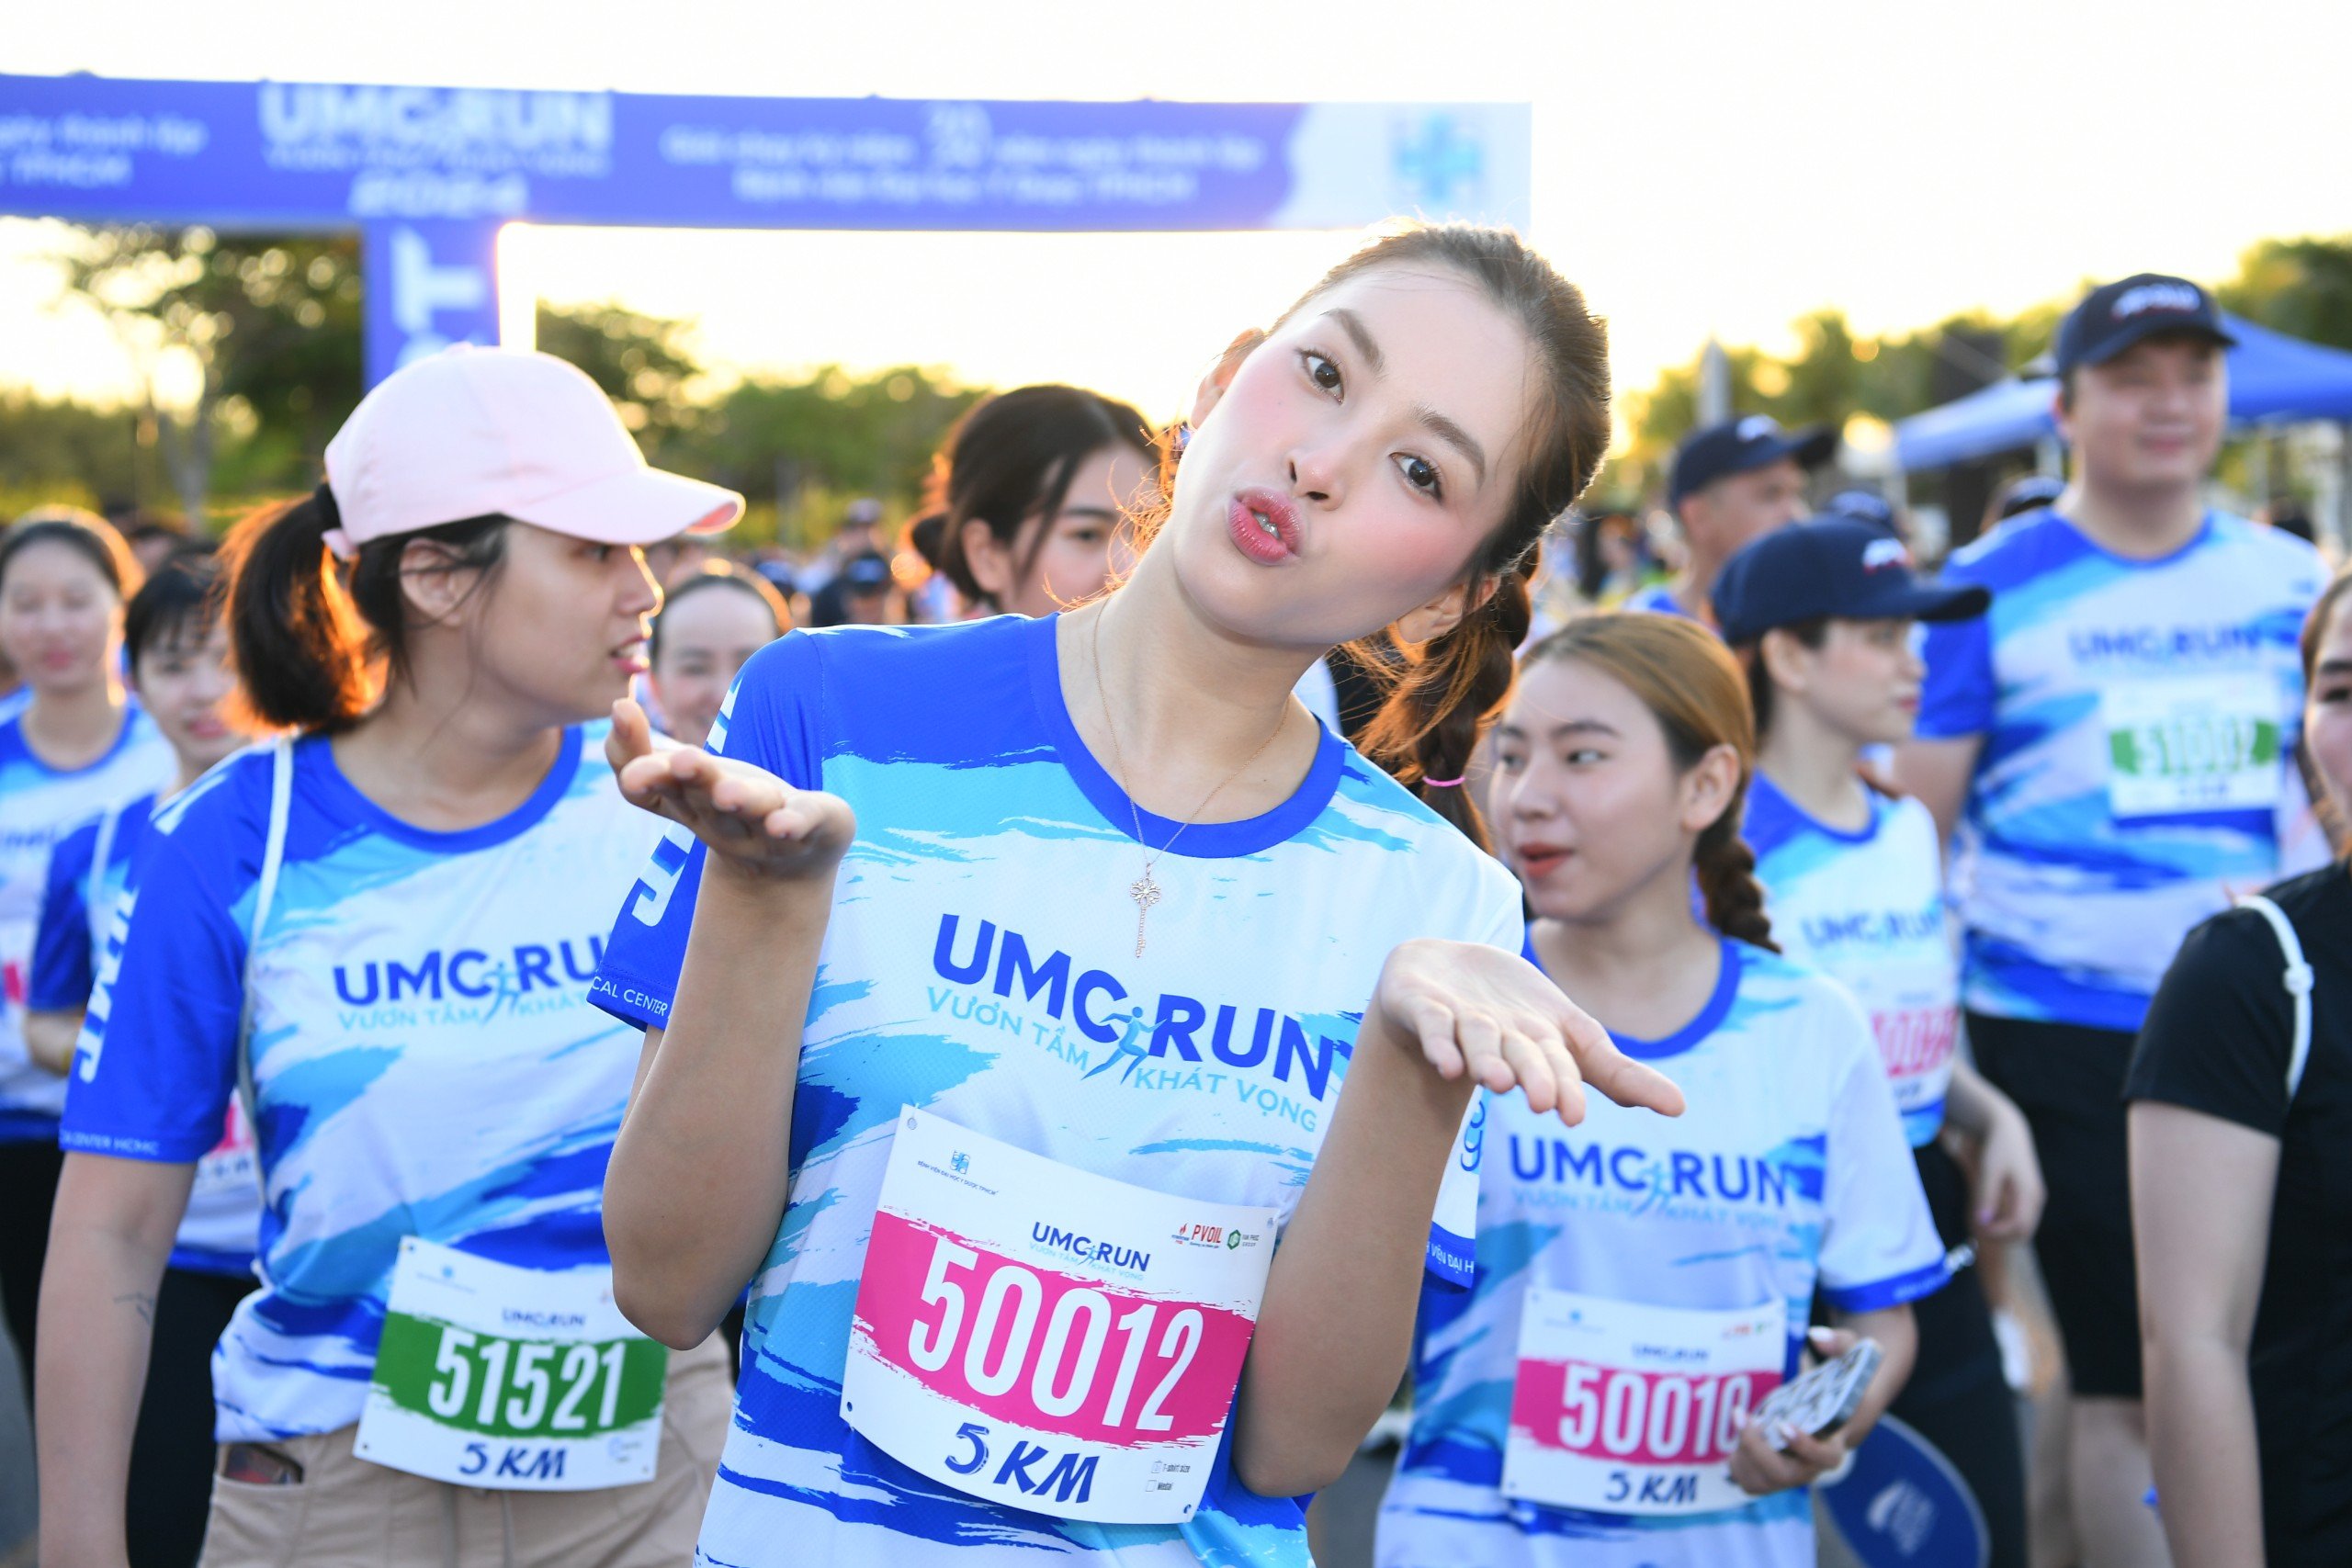 Hoa hậu Việt Nam 2018 Tiểu Vy tham gia giải chạy bộ với chủ đề “UMC Run - Vươn tầm khát vọng” do Bệnh viện ĐH Y Dược TP.HCM tổ chức